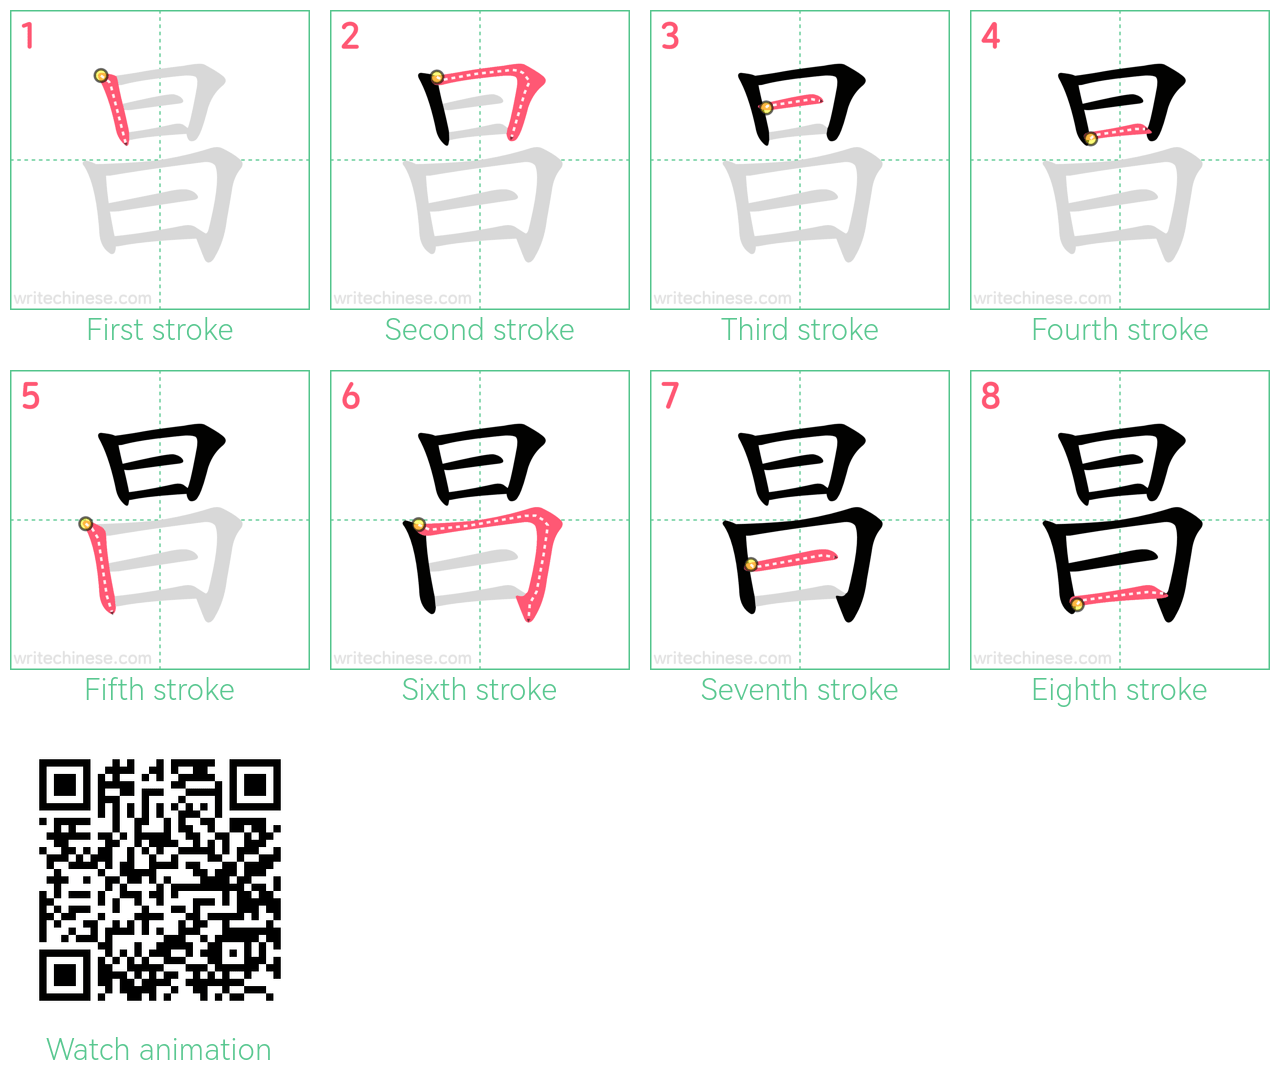 昌 step-by-step stroke order diagrams